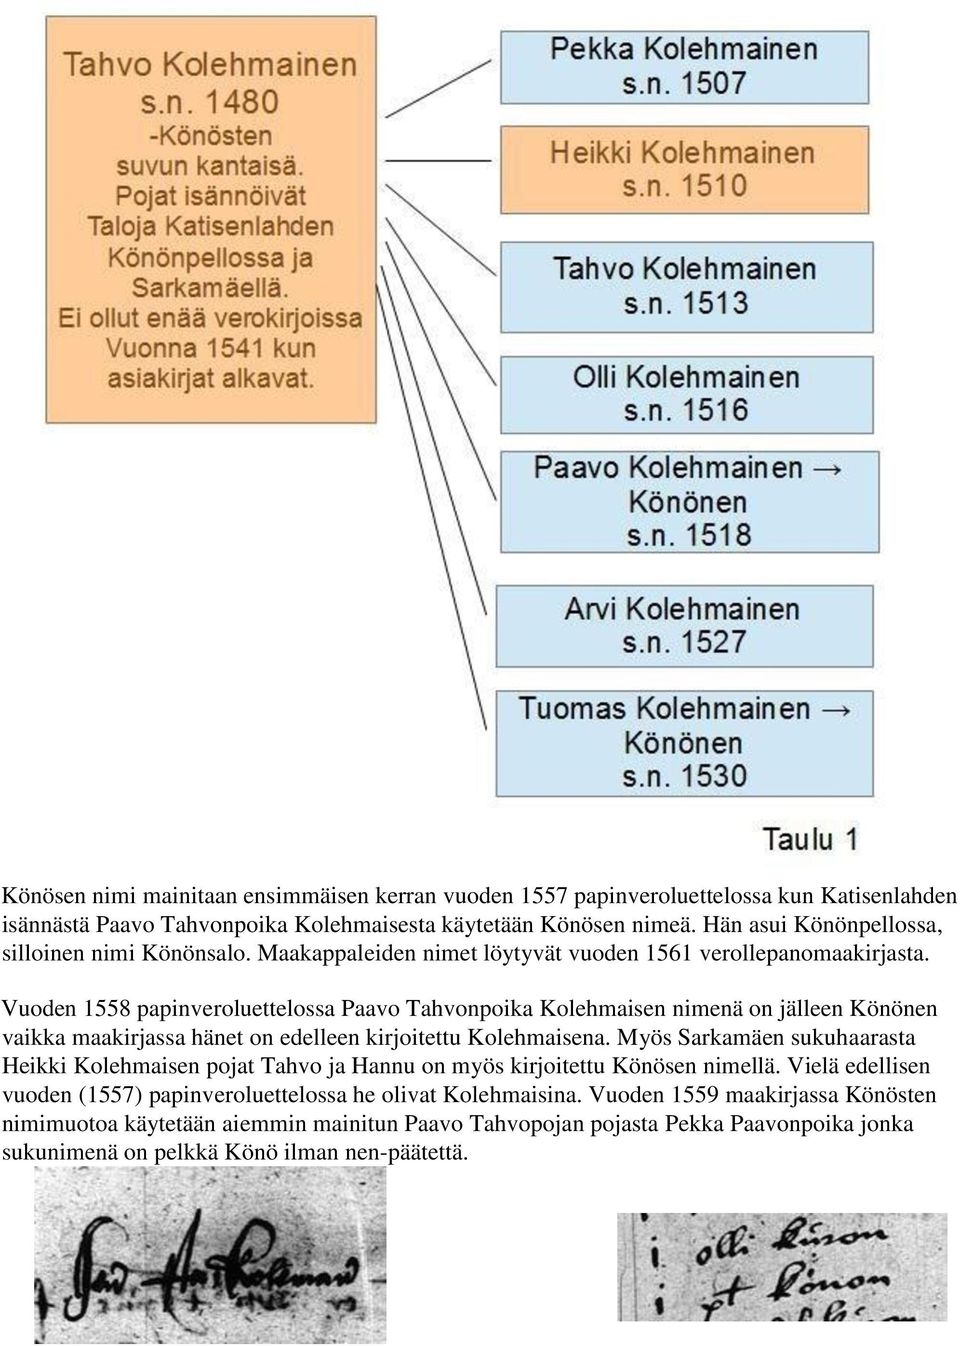 Vuoden 1558 papinveroluettelossa Paavo Tahvonpoika Kolehmaisen nimenä on jälleen Könönen vaikka maakirjassa hänet on edelleen kirjoitettu Kolehmaisena.